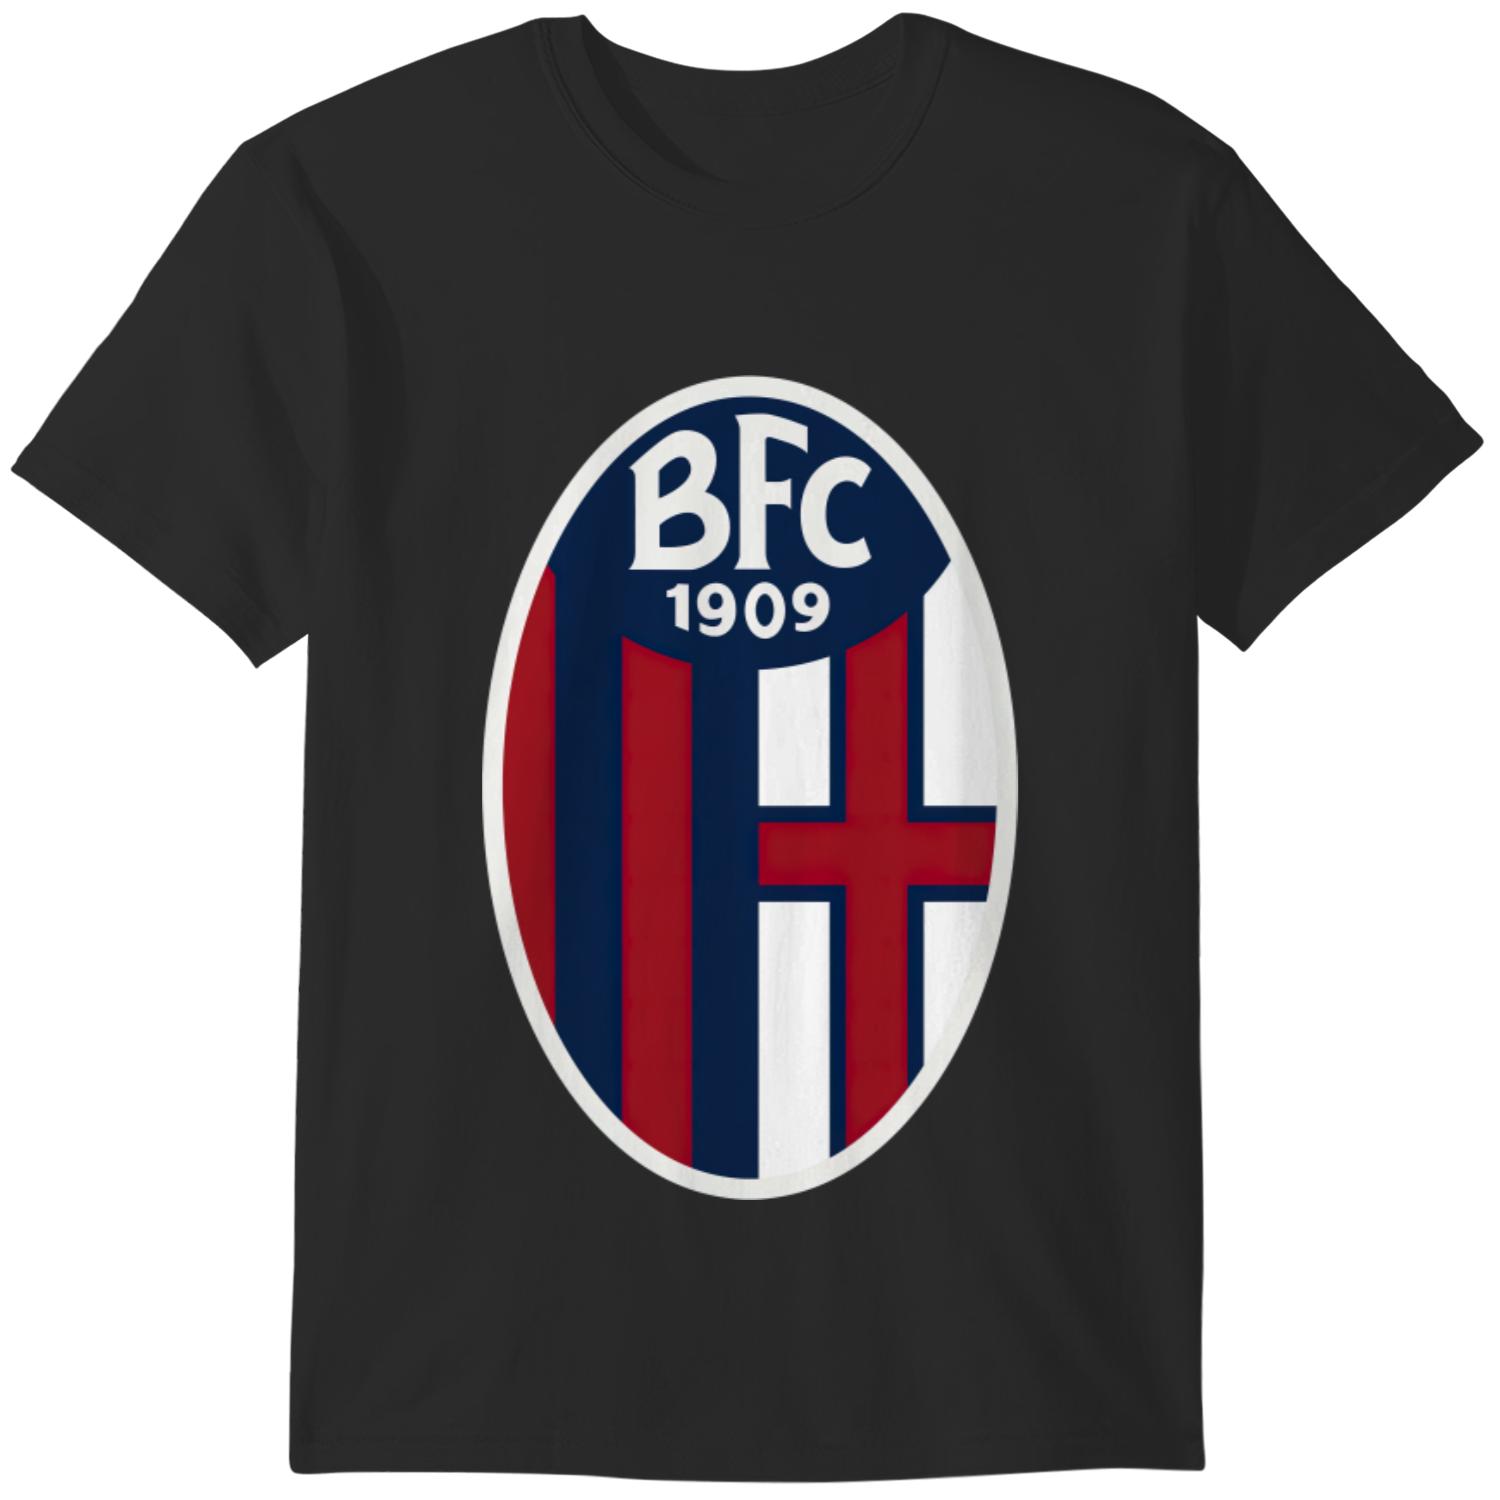 Discover Maglietta T-Shirt Bologna FC 1909 Tifoso Uomo Donna Bambini